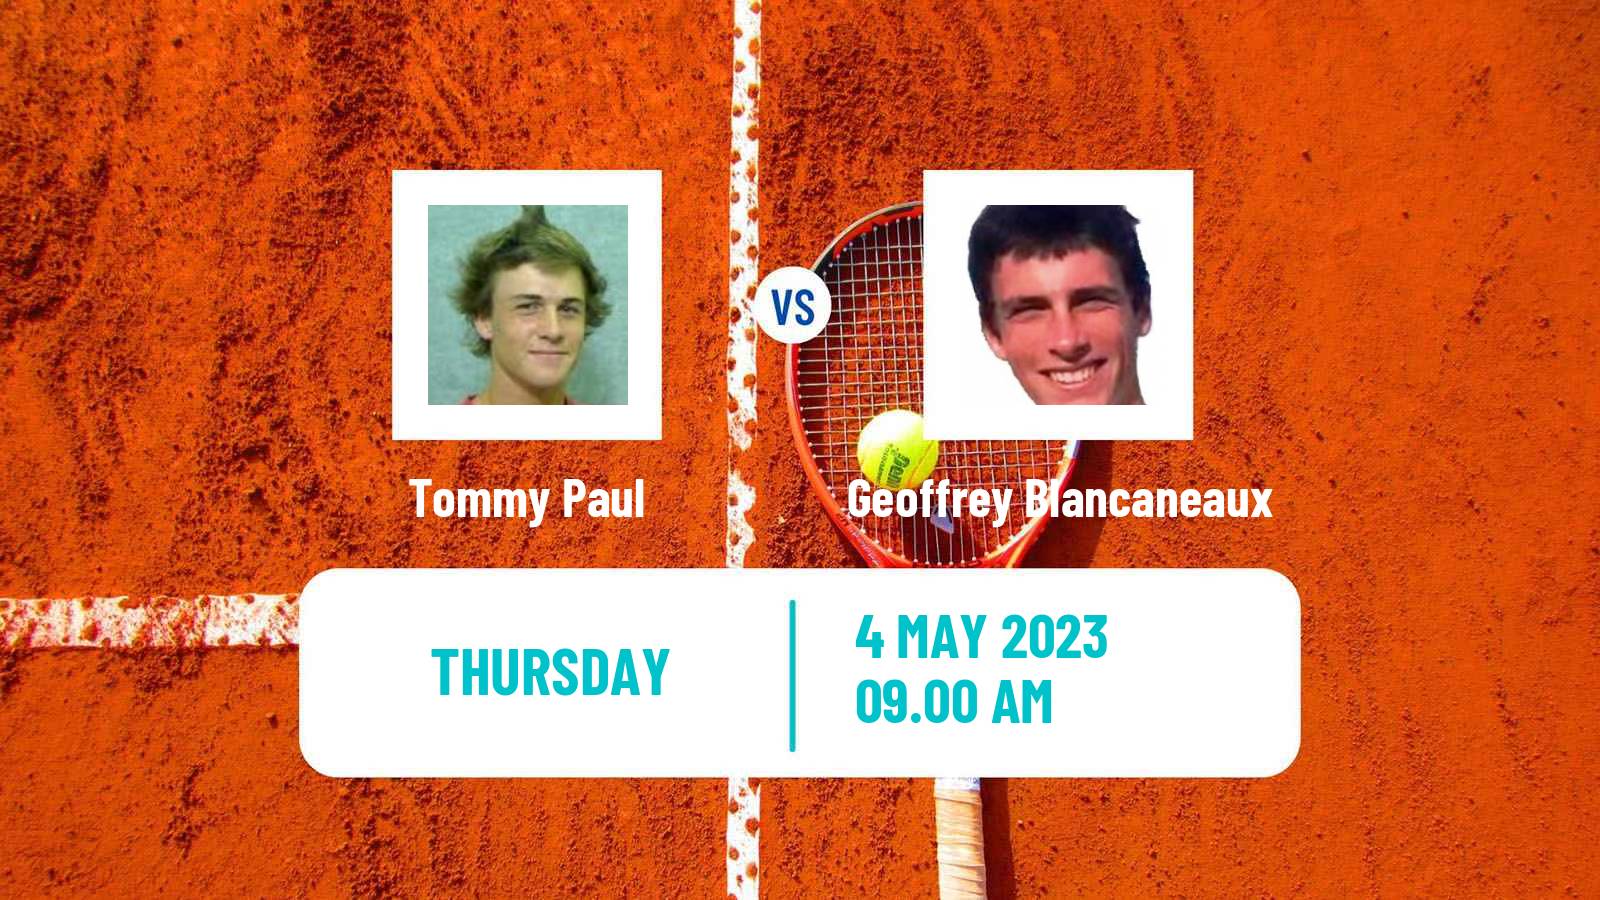 Tennis ATP Challenger Tommy Paul - Geoffrey Blancaneaux